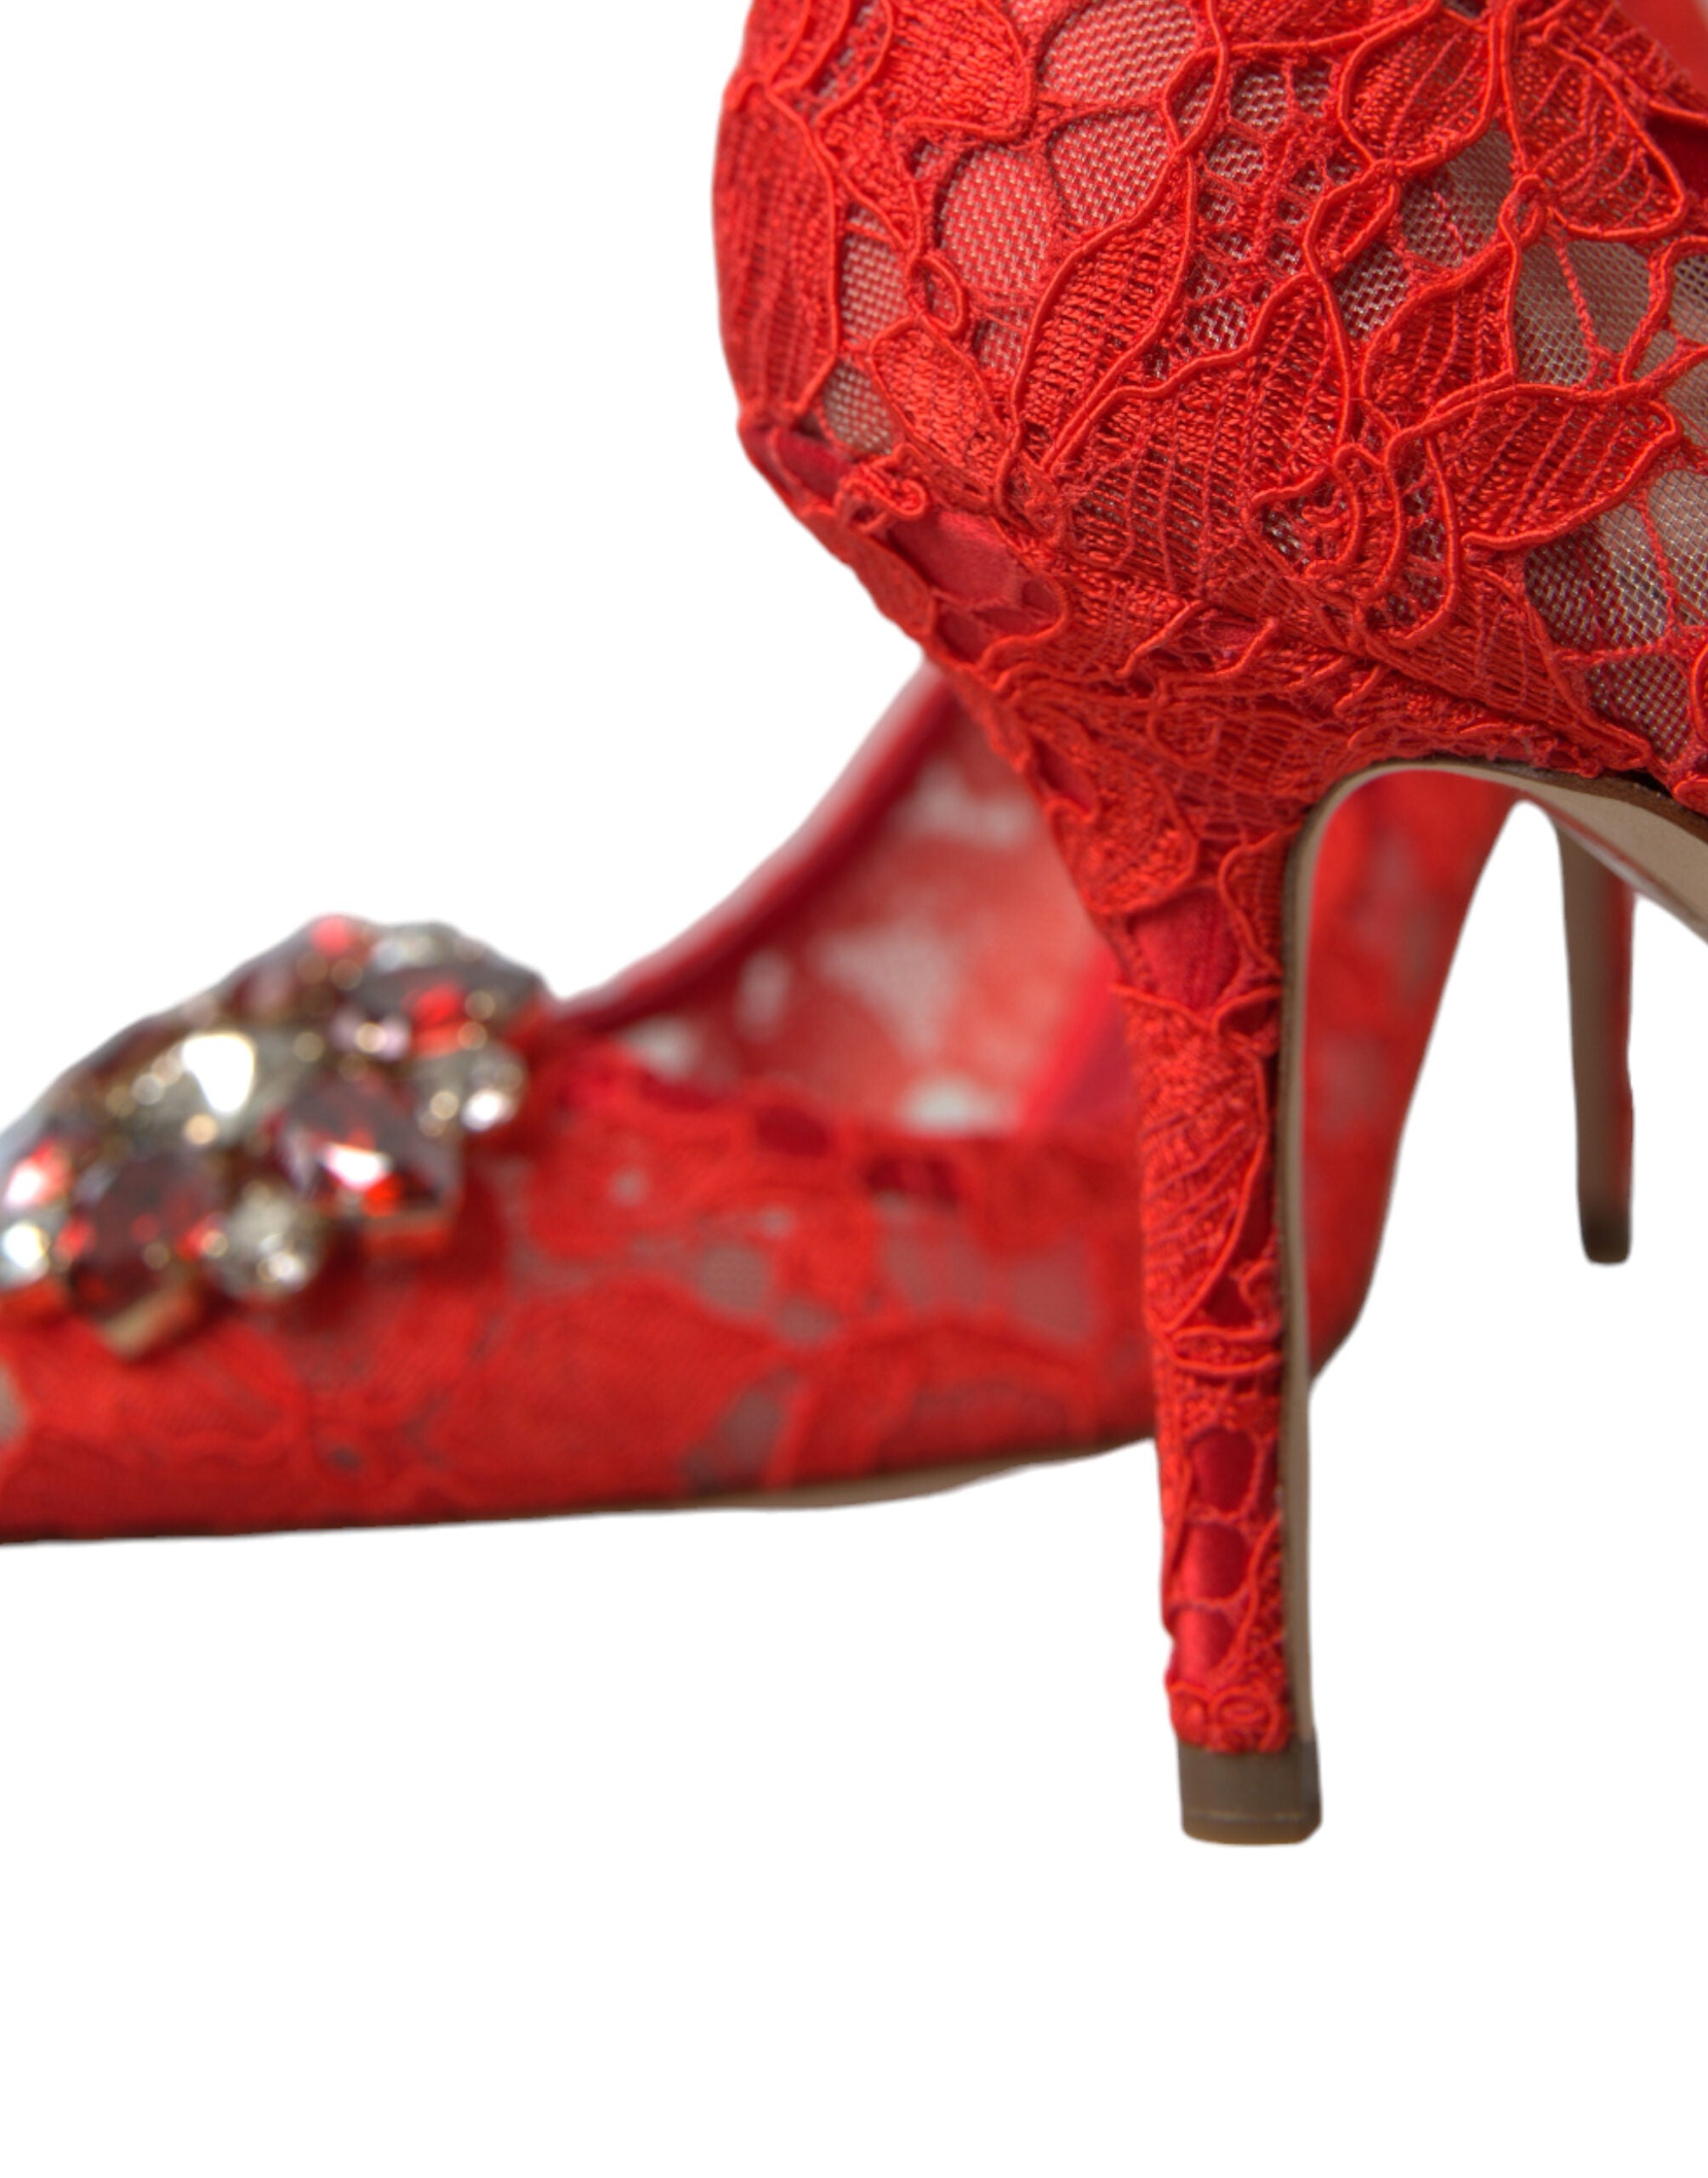 Dolce & Gabbana Exquisitos tacones de encaje rojo adornados con cristales